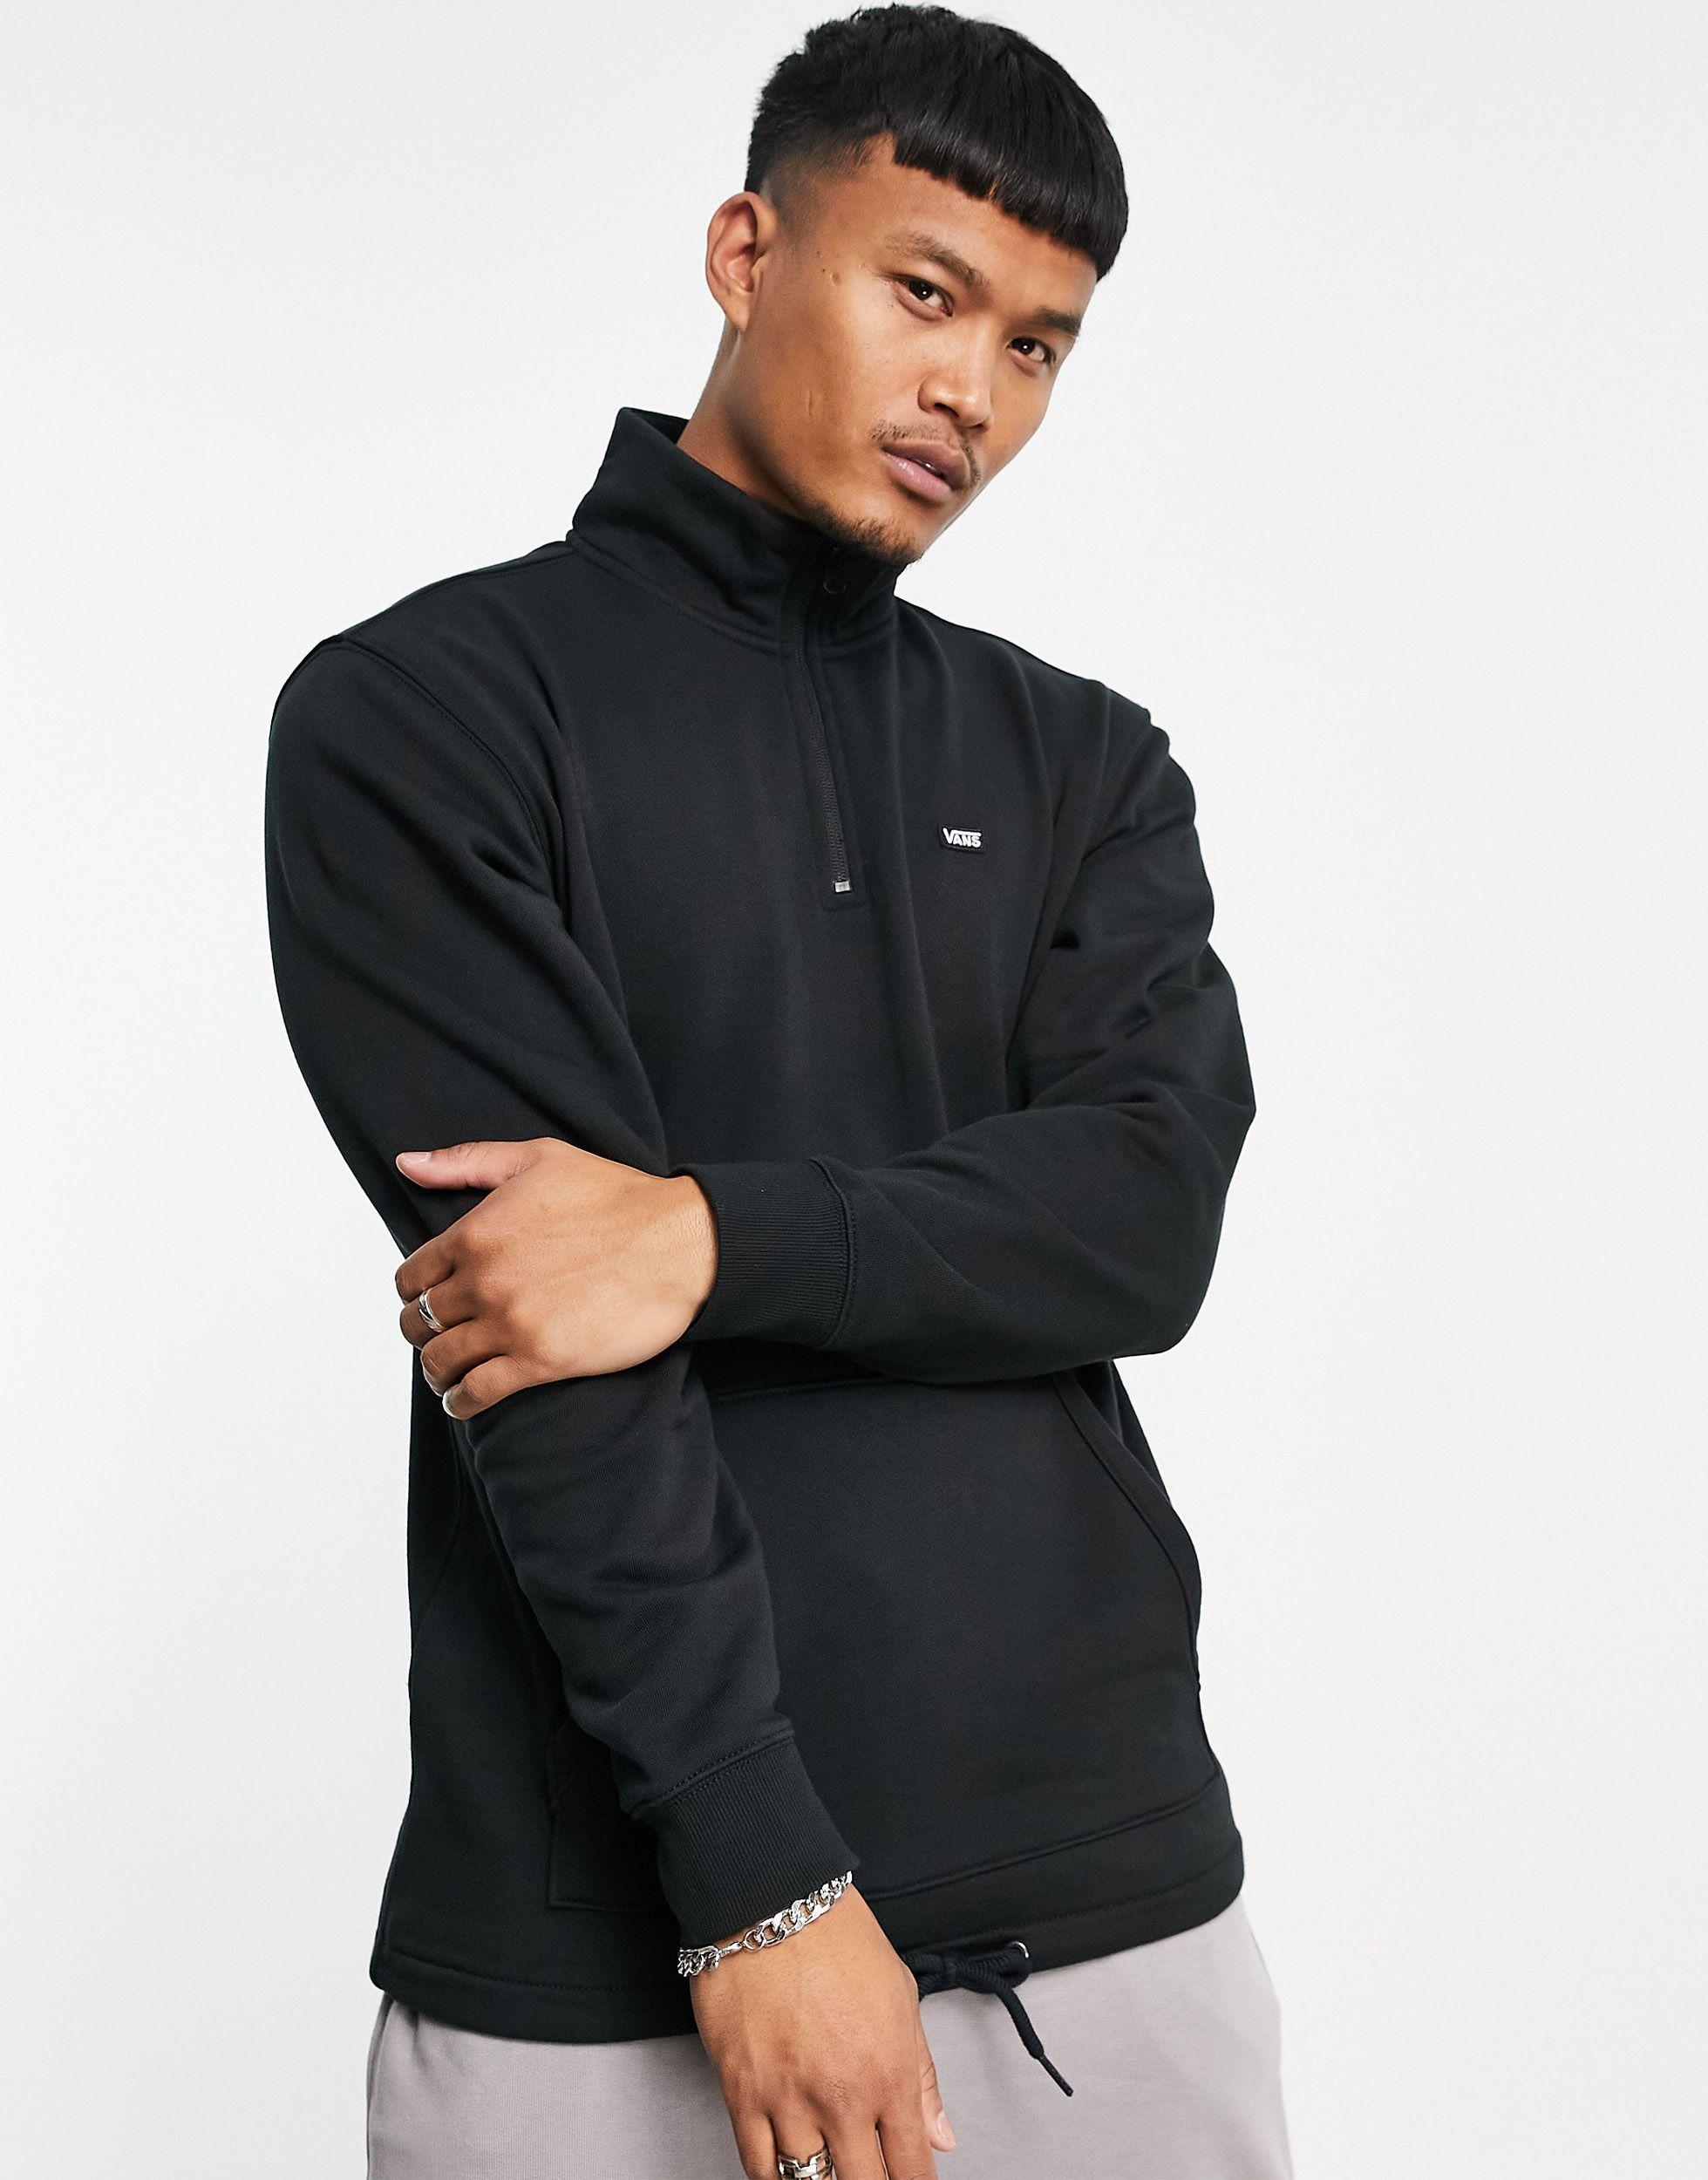 Vans Cotton Versa Standard 1/4 Zip Sweatshirt in Black for Men - Save 13% |  Lyst UK